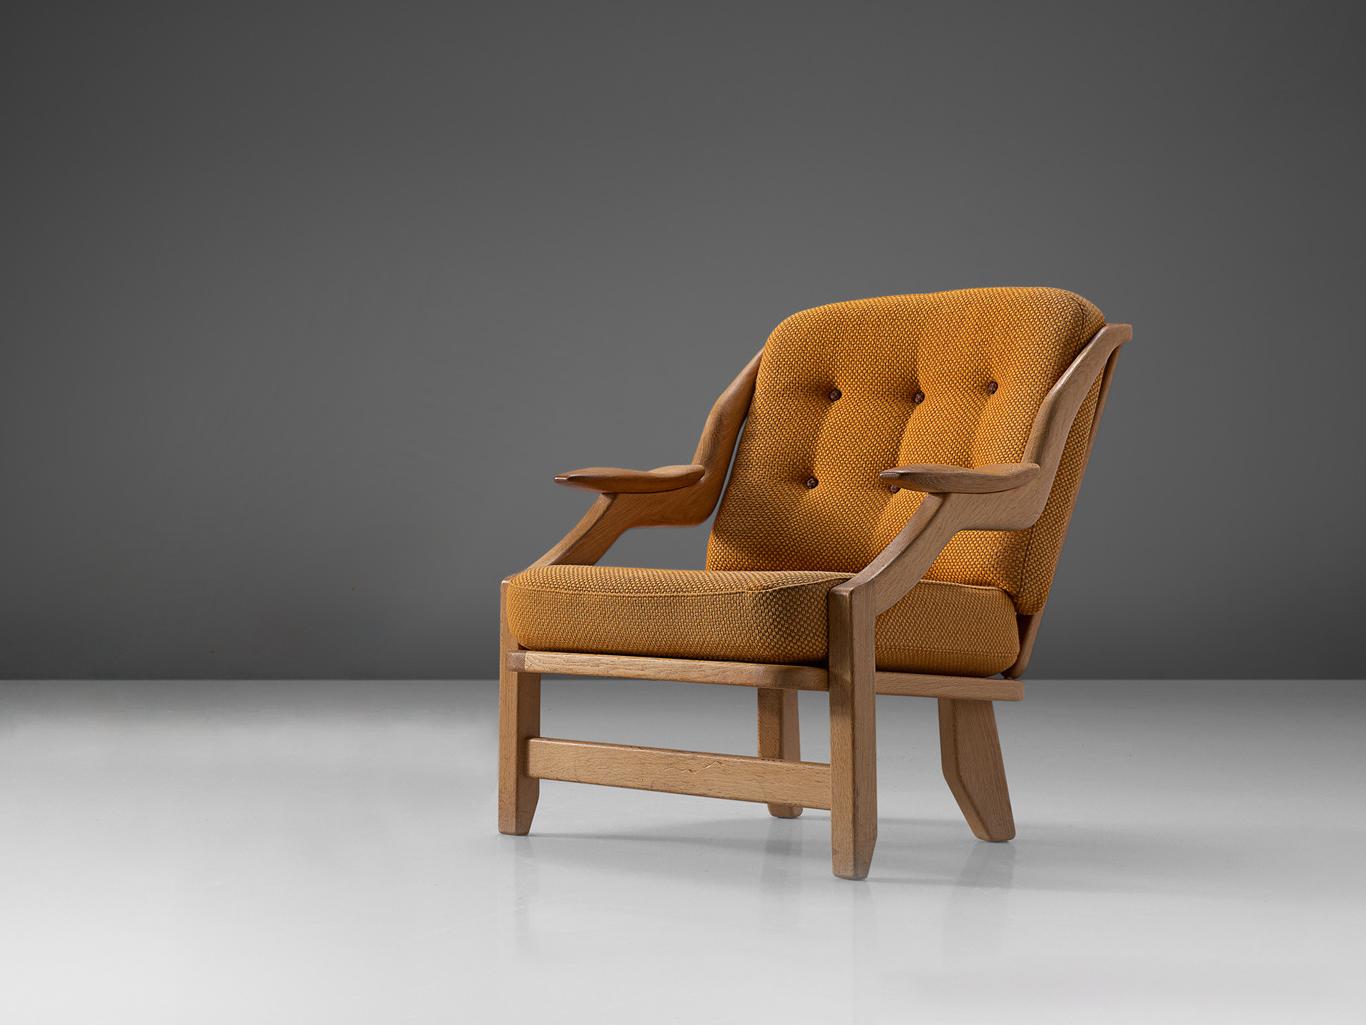 Guillerme et Chambron pour Votre Maison, chaise longue, modèle 'Grégoire', tapisserie en laine orange, chêne, France, années 1960.

Chaise longue confortable conçue par Guillerme et Chambron. Ces chaises ont une forme très intéressante vue de côté.